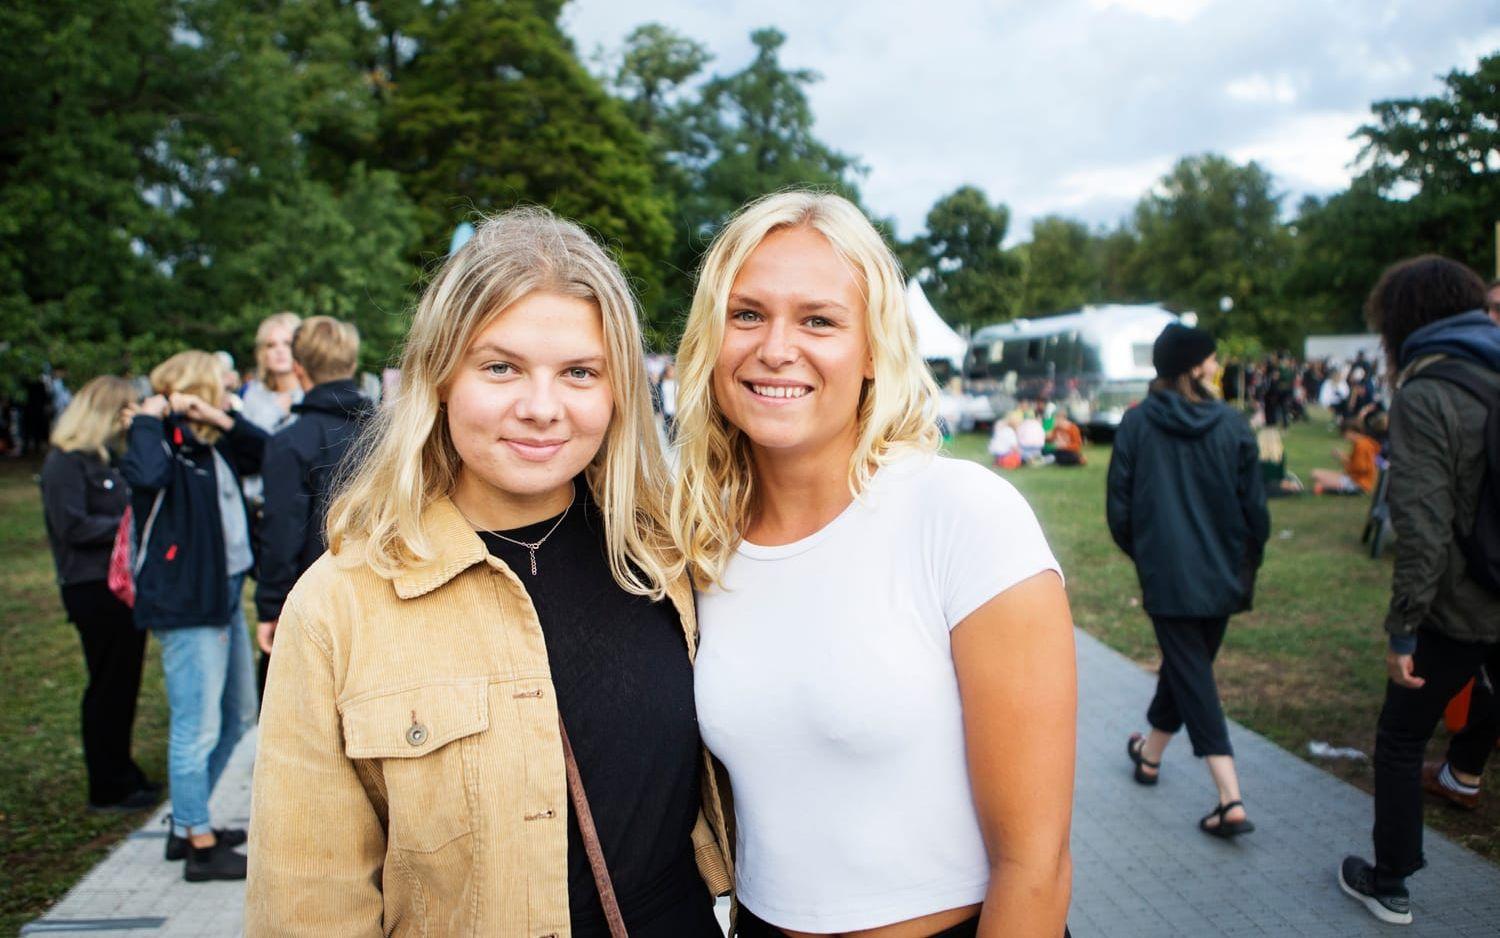 Vännerna Tova Andersson och Klara Eklund hade fått biljetter via programmet Share out west och hade bara fyra timmar på sig att njuta av festivalen.